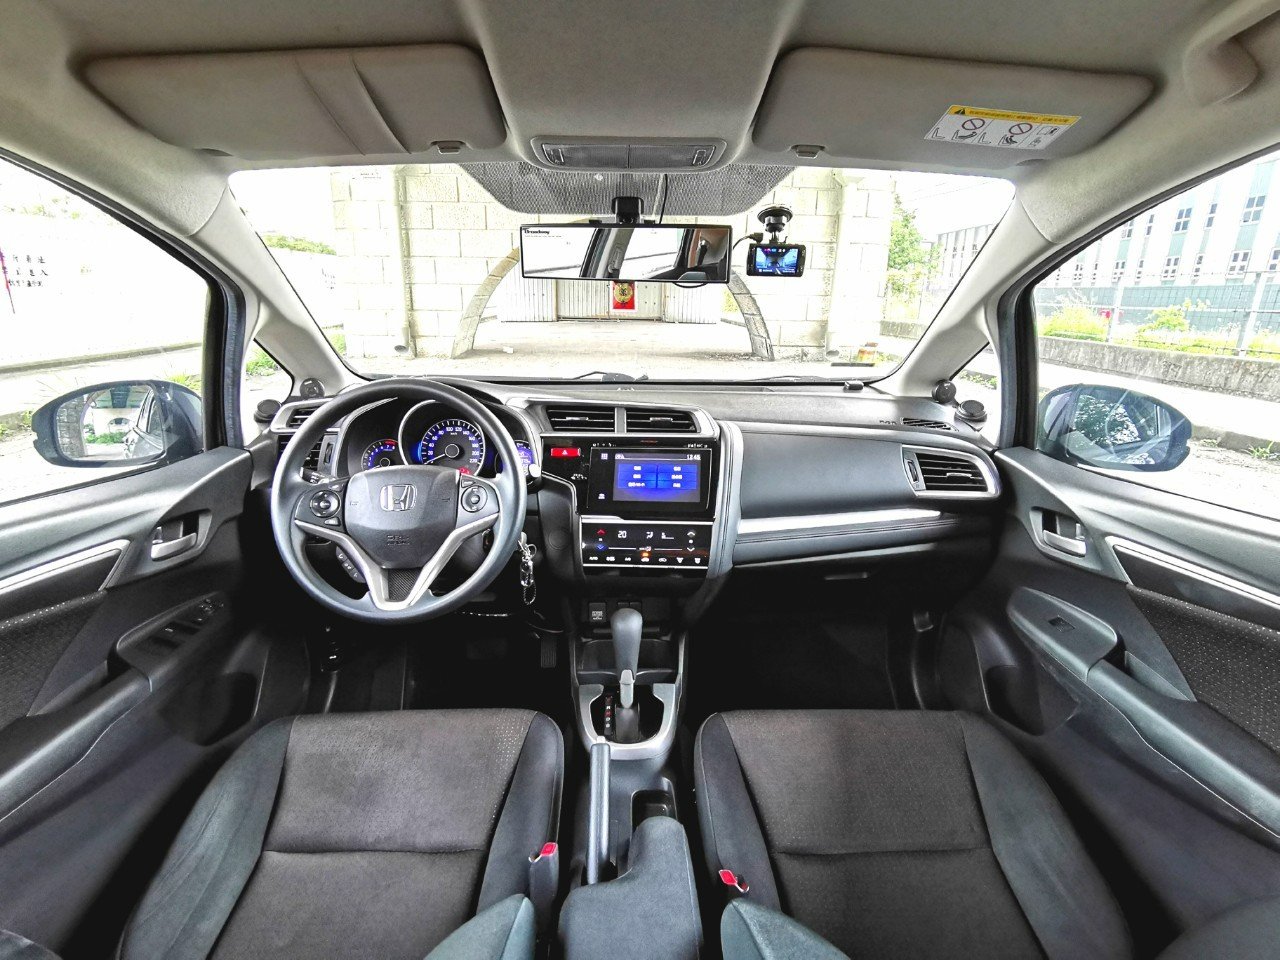 2015 Honda FIT 1.5 S- 中古車買賣專門店-SUM認證車庫-圖片